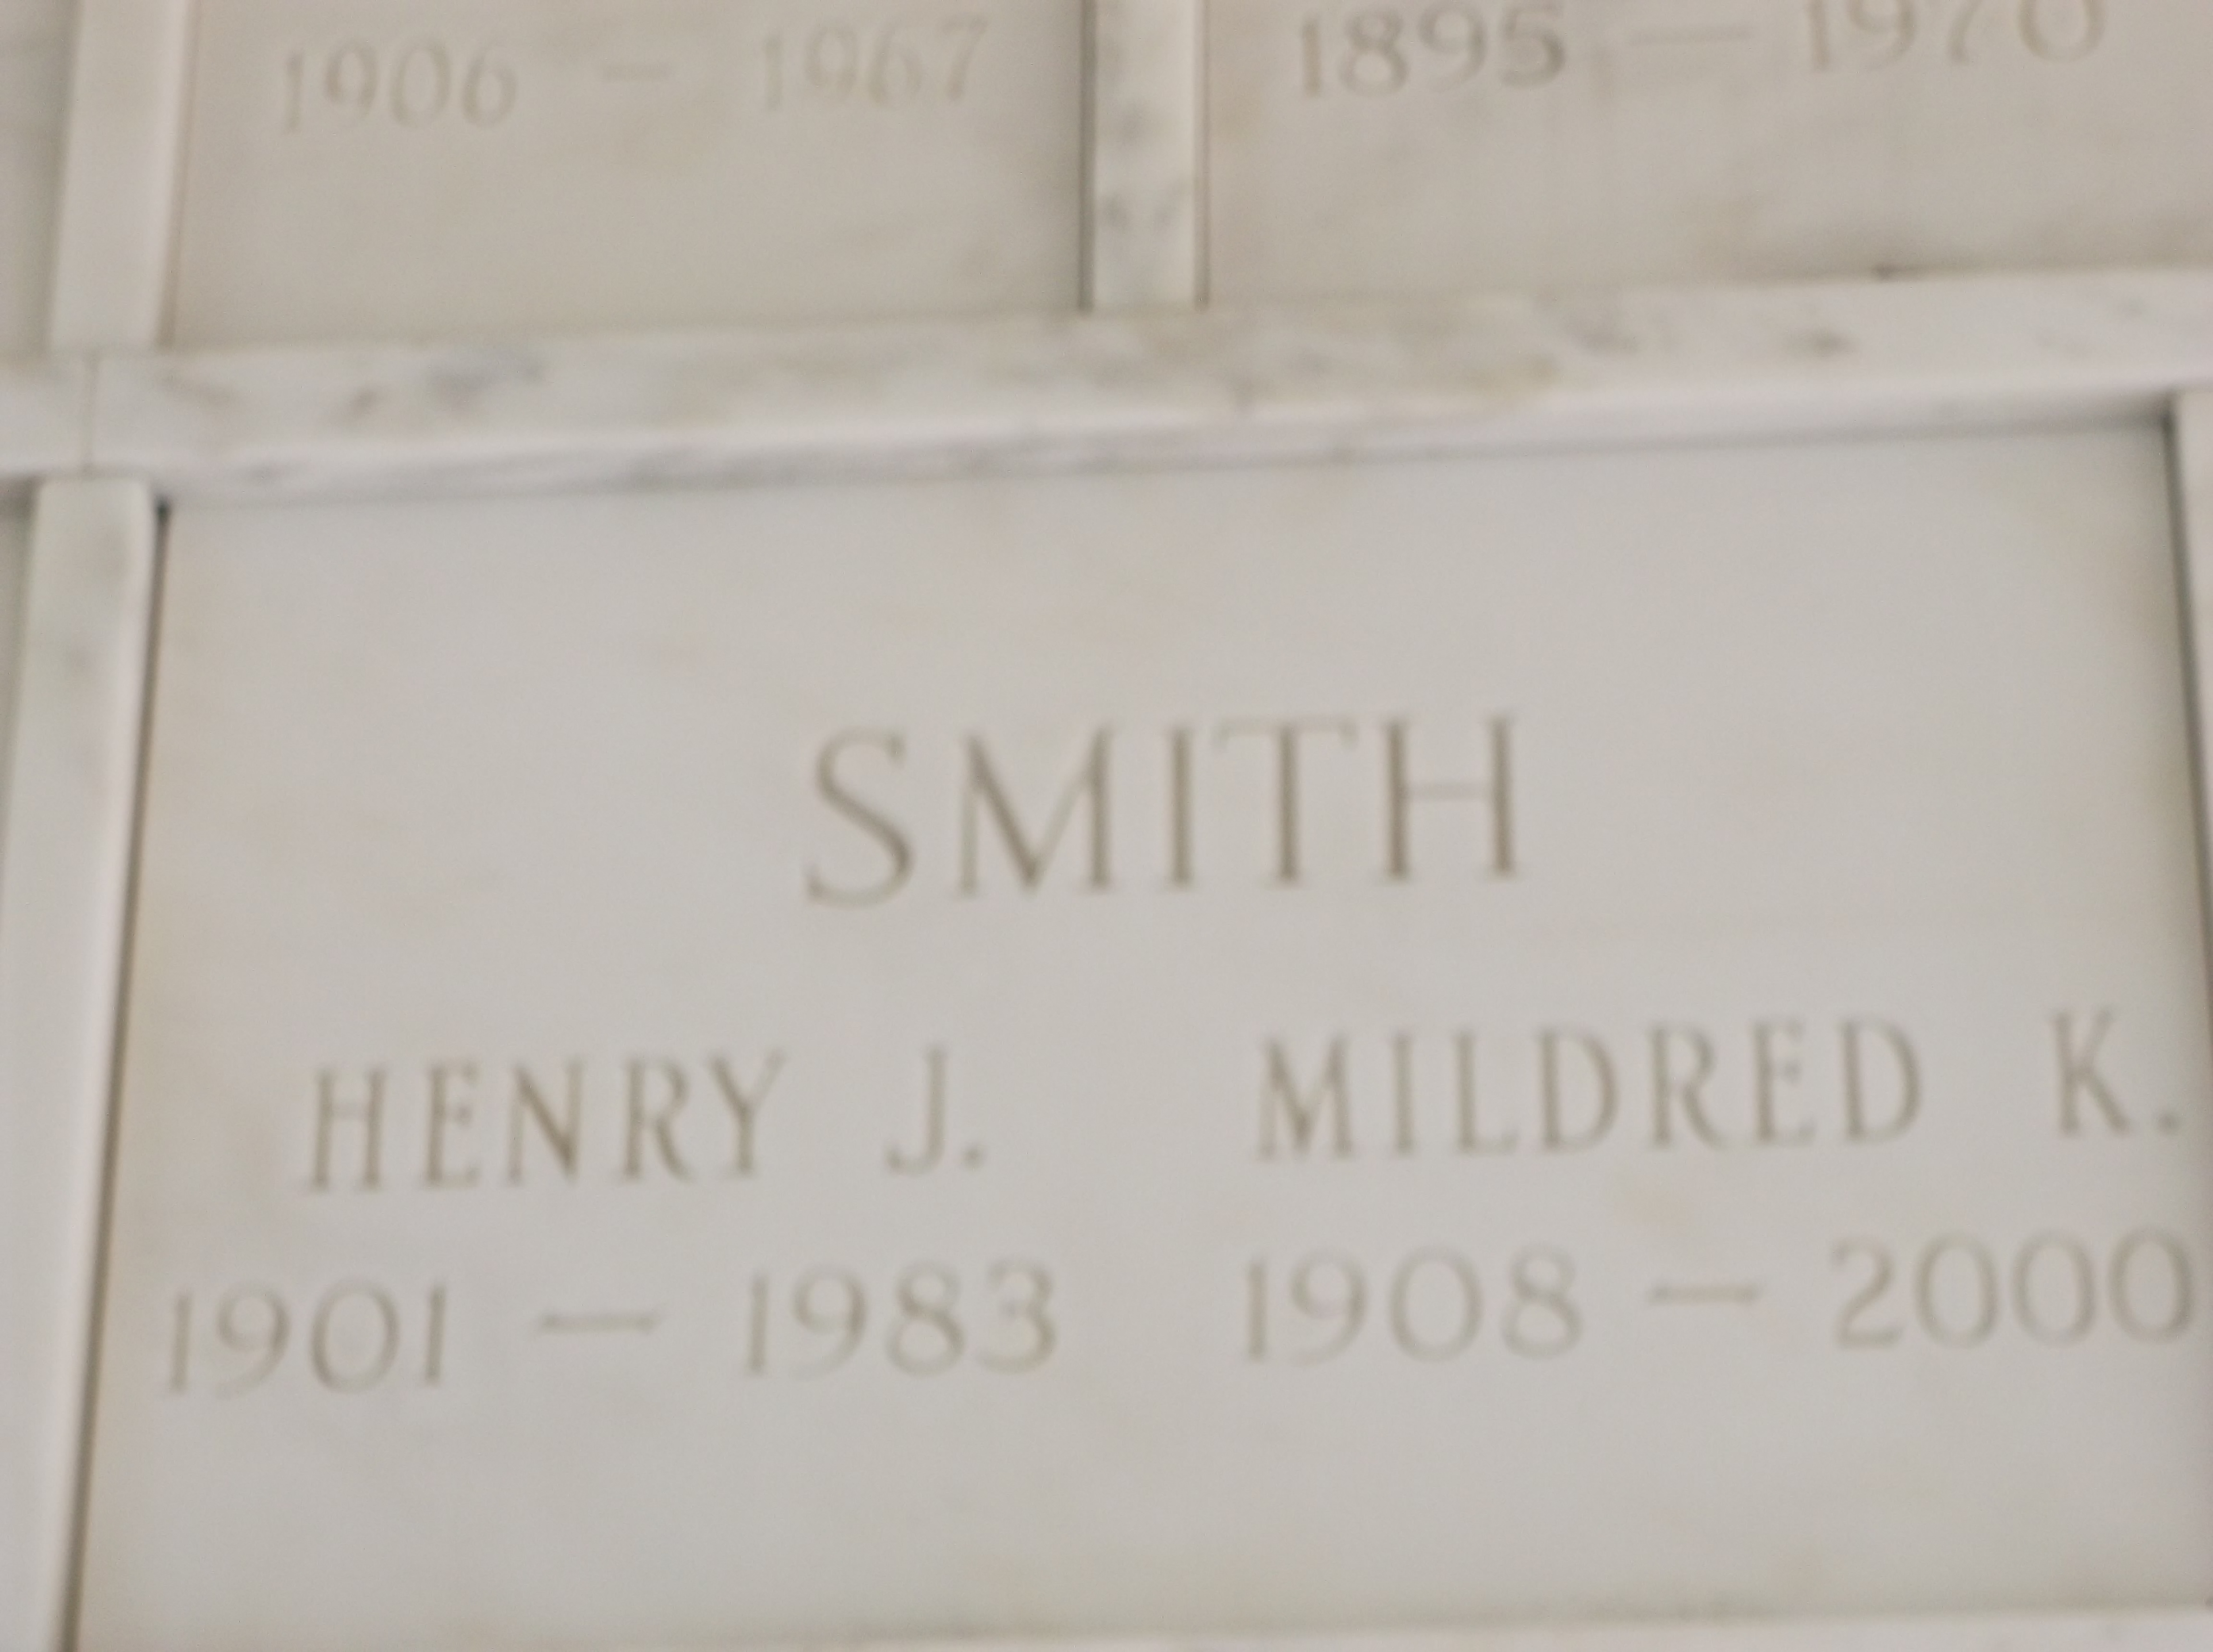 Henry J Smith